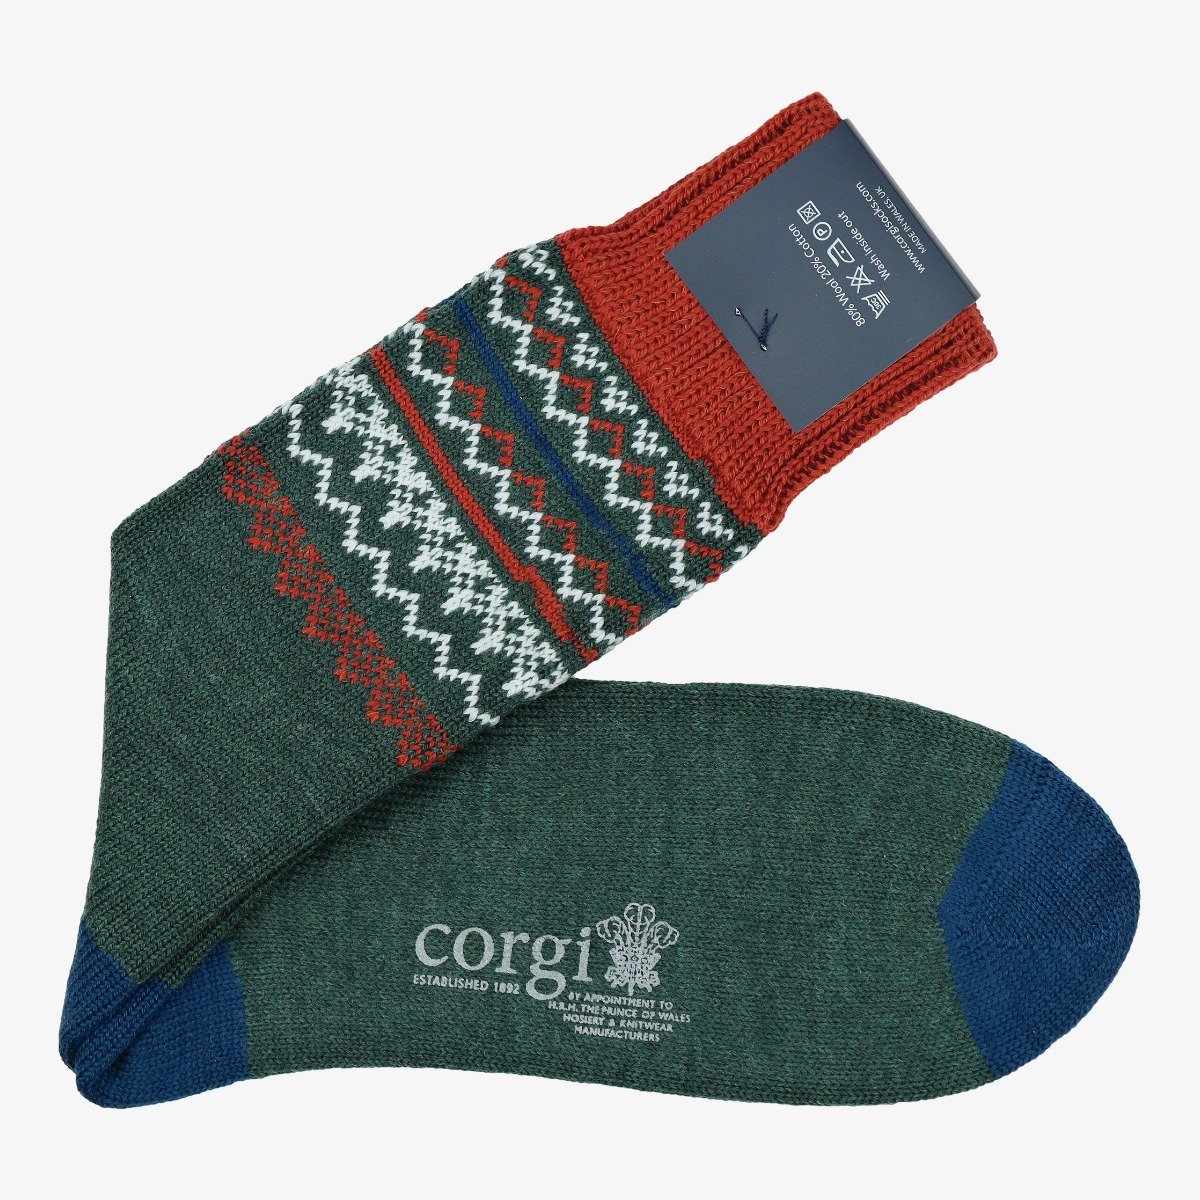 Corgi green Fair Isle wool men's socks